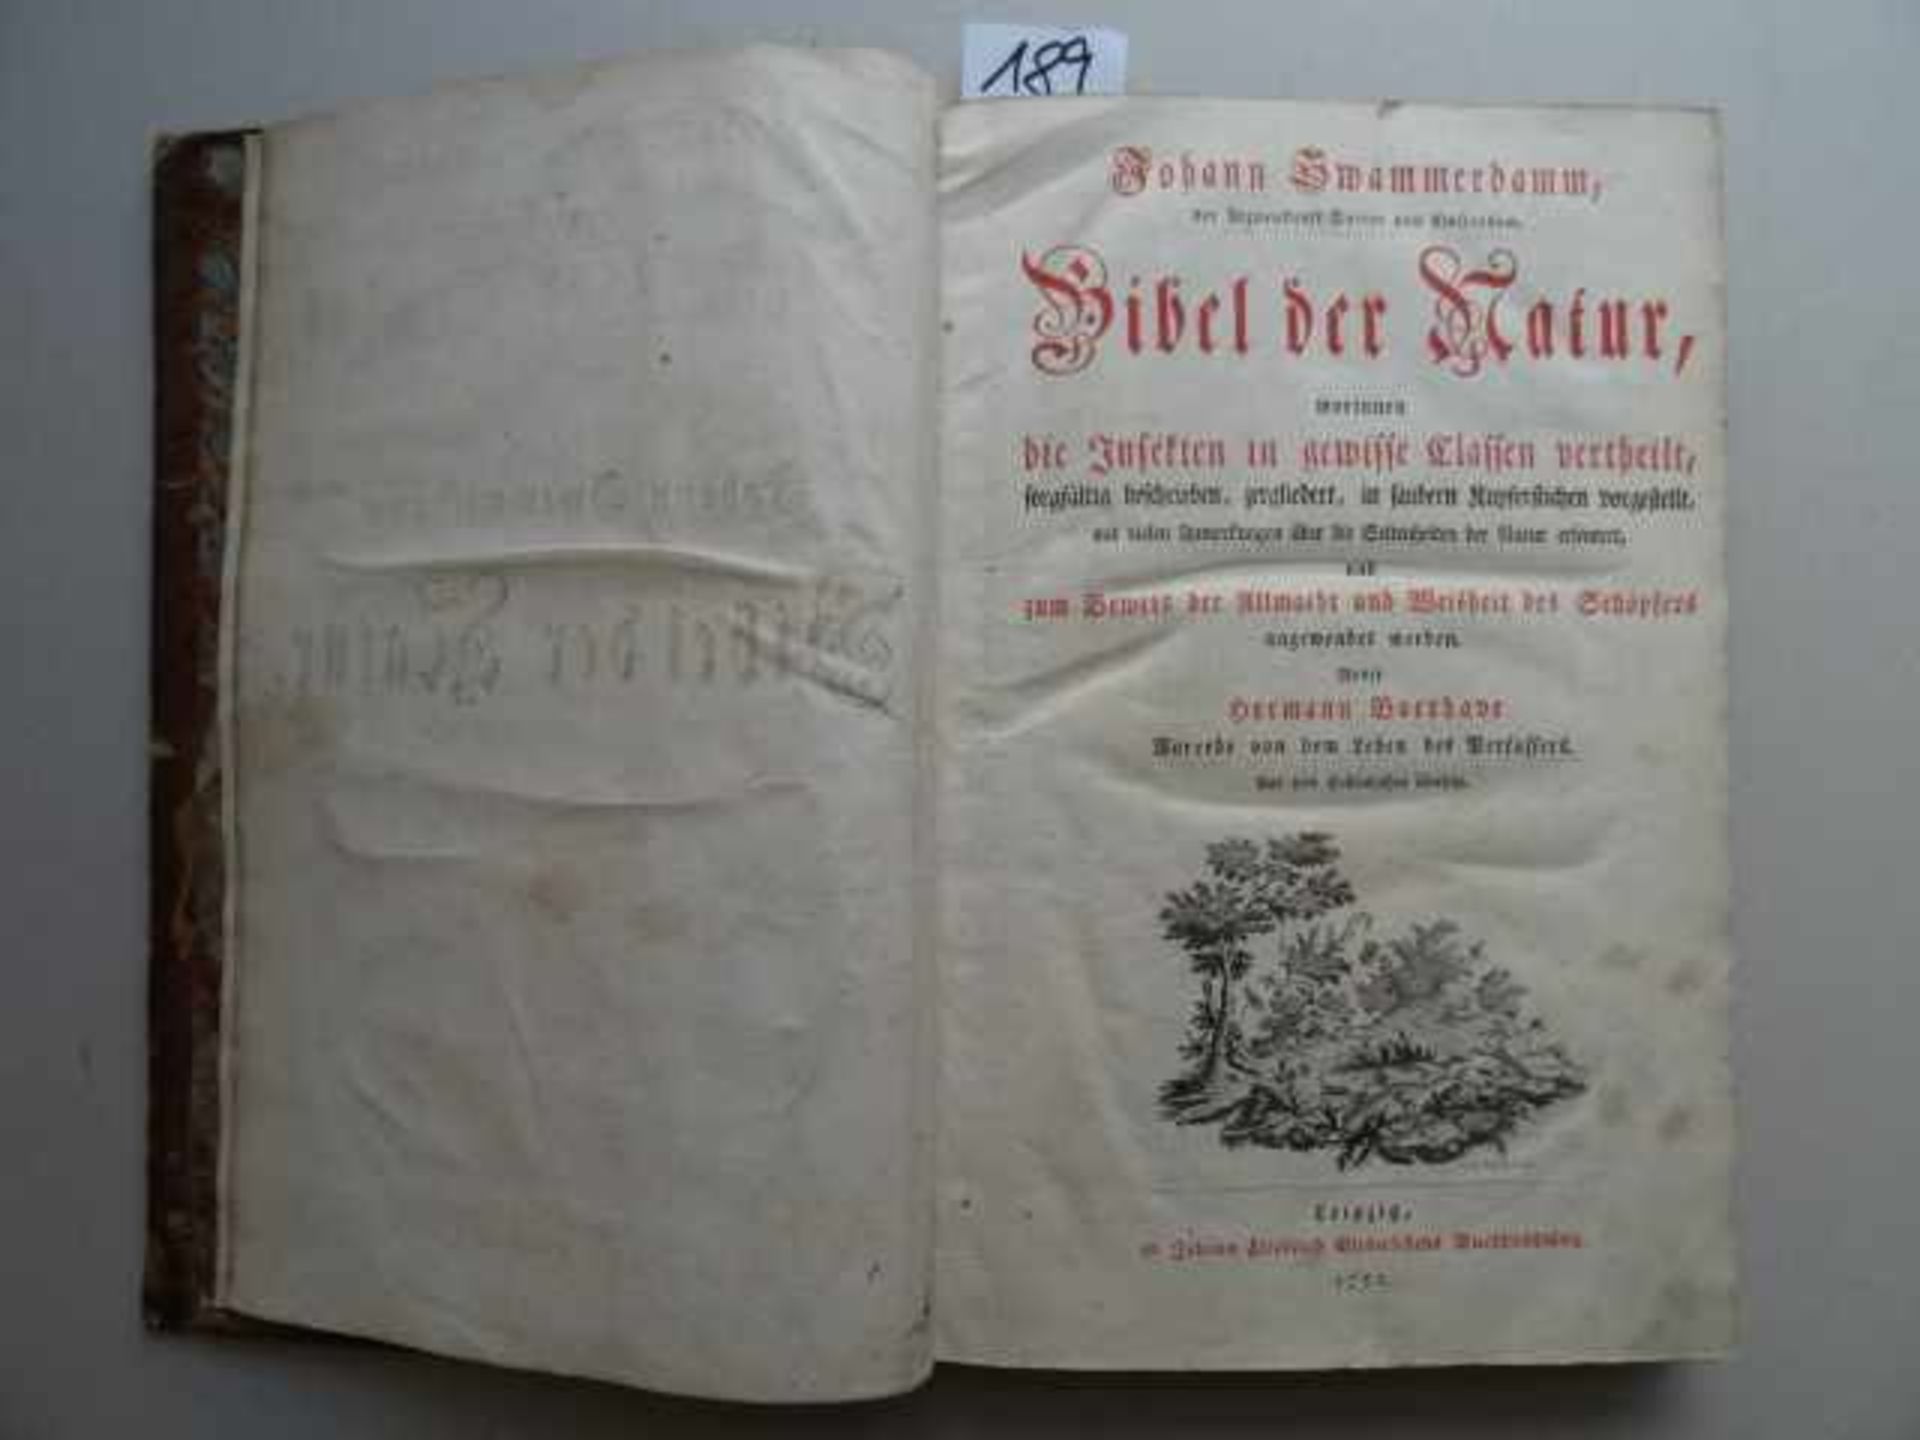 Swammerdamm, J. Bibel der Natur... Leipzig, Gleditsch, 1752. 4 Bll., XII S., 1 Bl., 410 S., 7